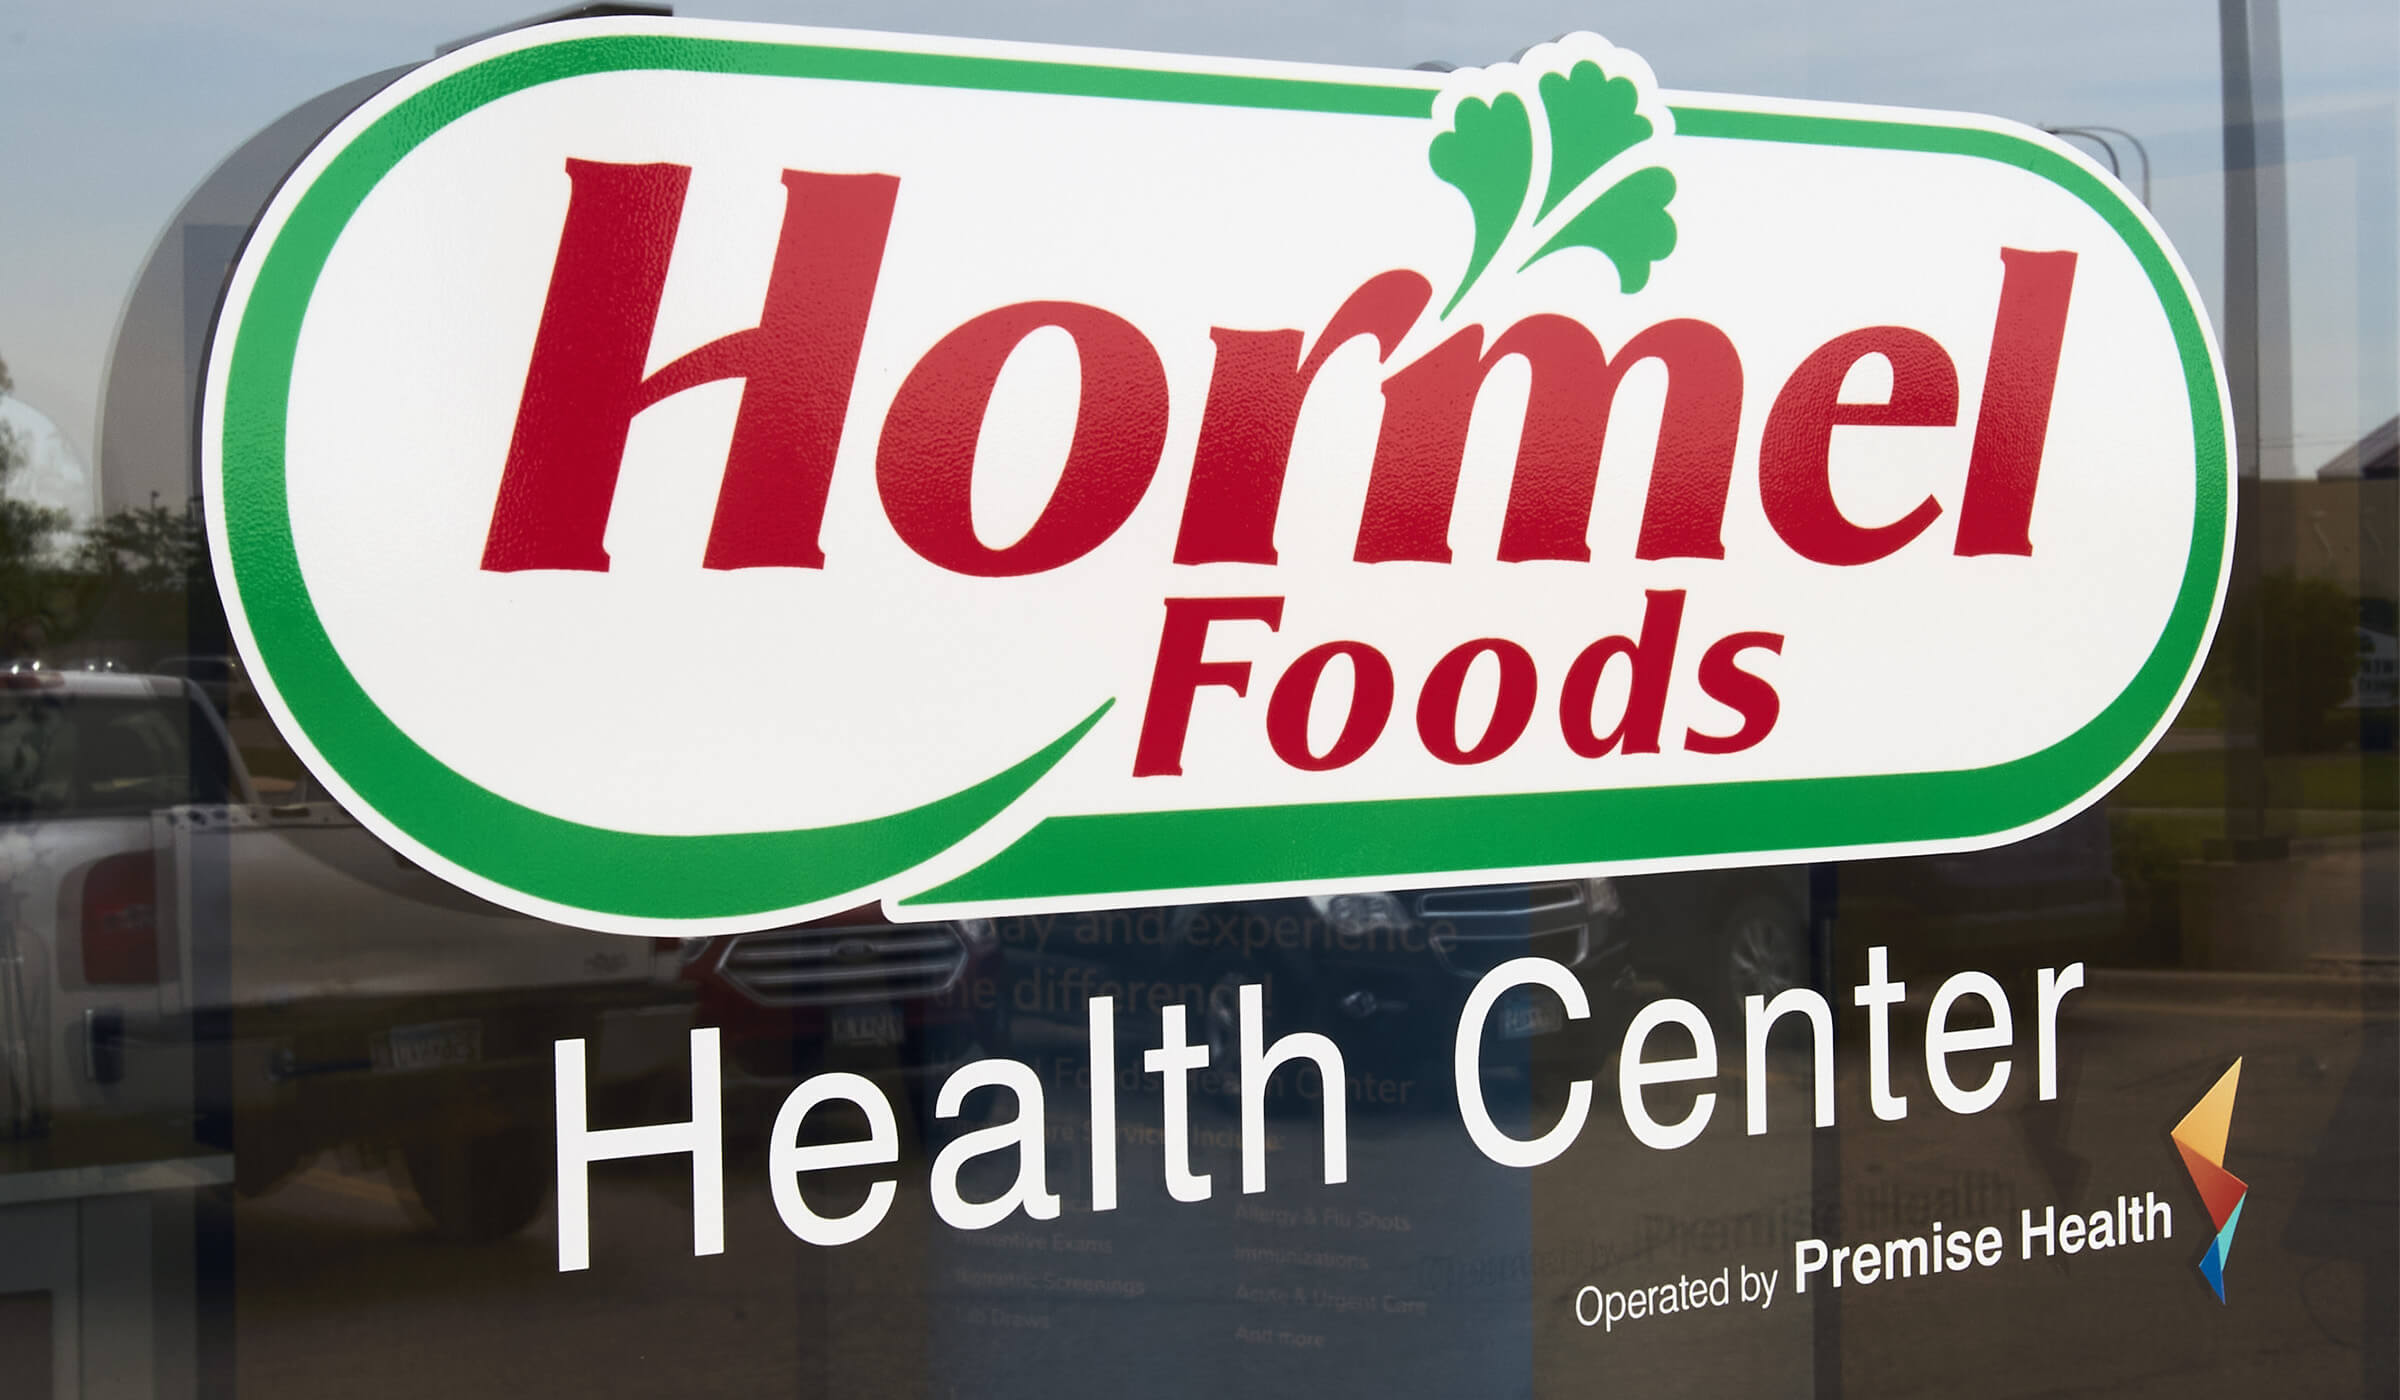 Hormel Foods Health Center door signage